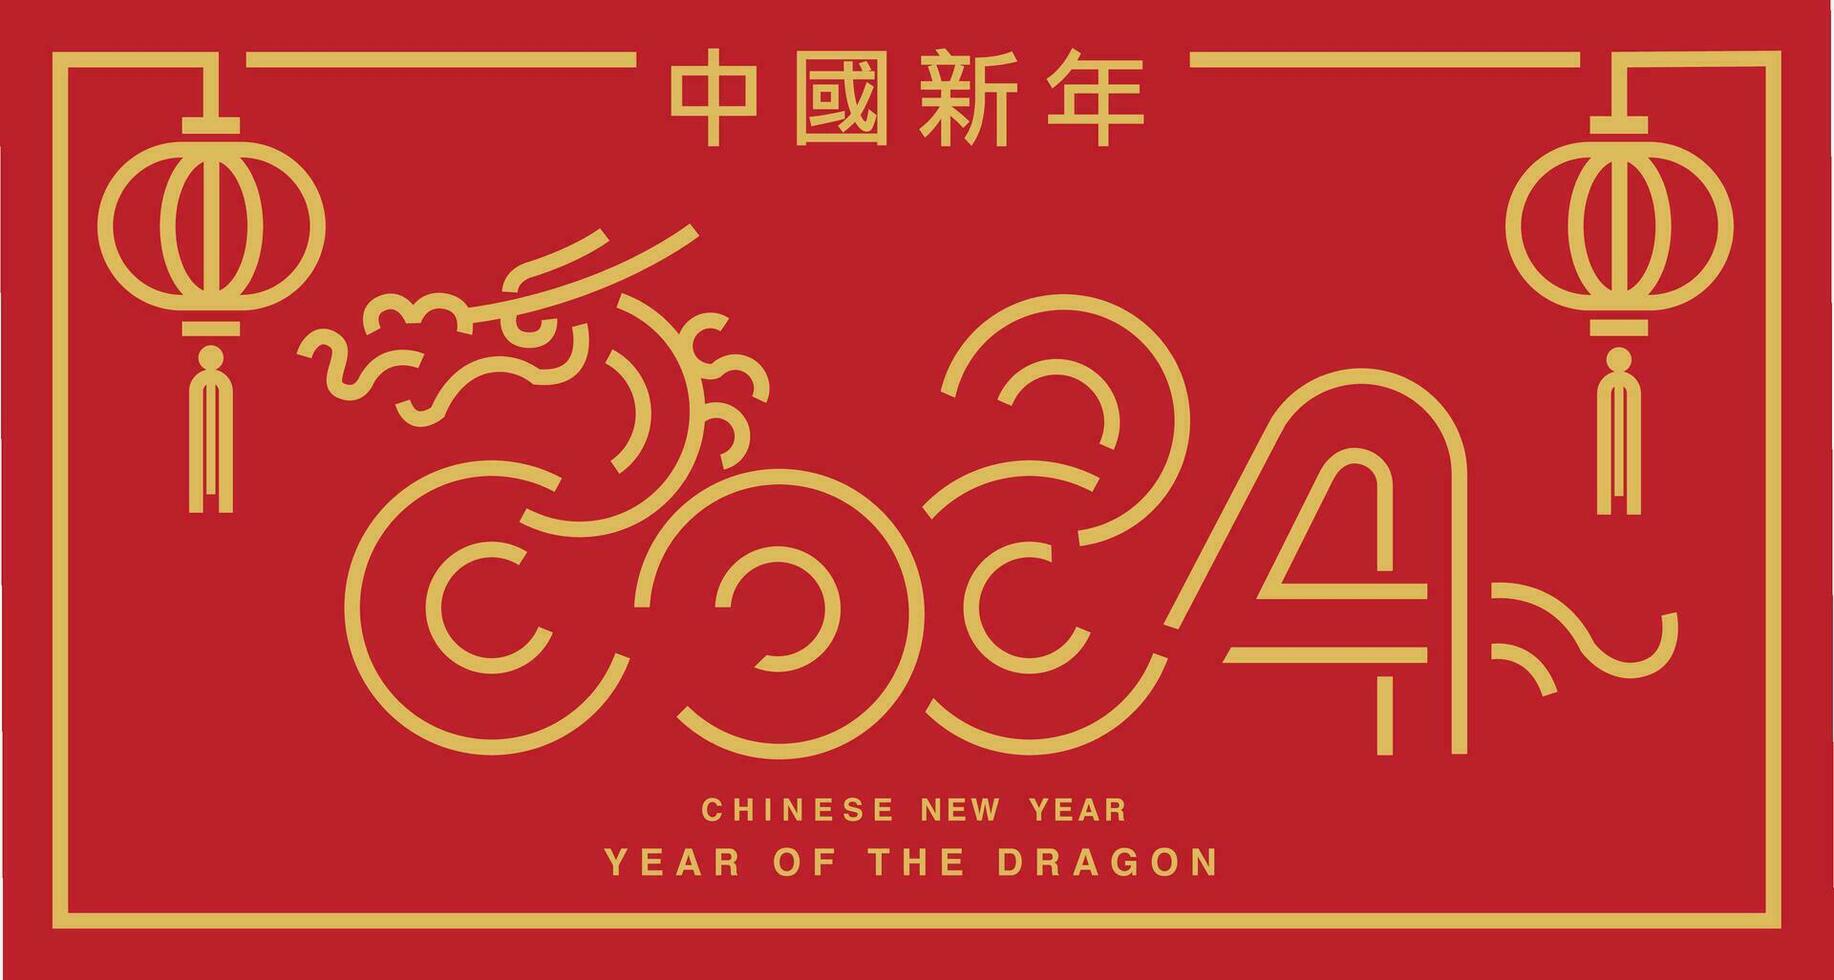 lunar nuevo año, chino nuevo año 2024 , año de el continuar vector